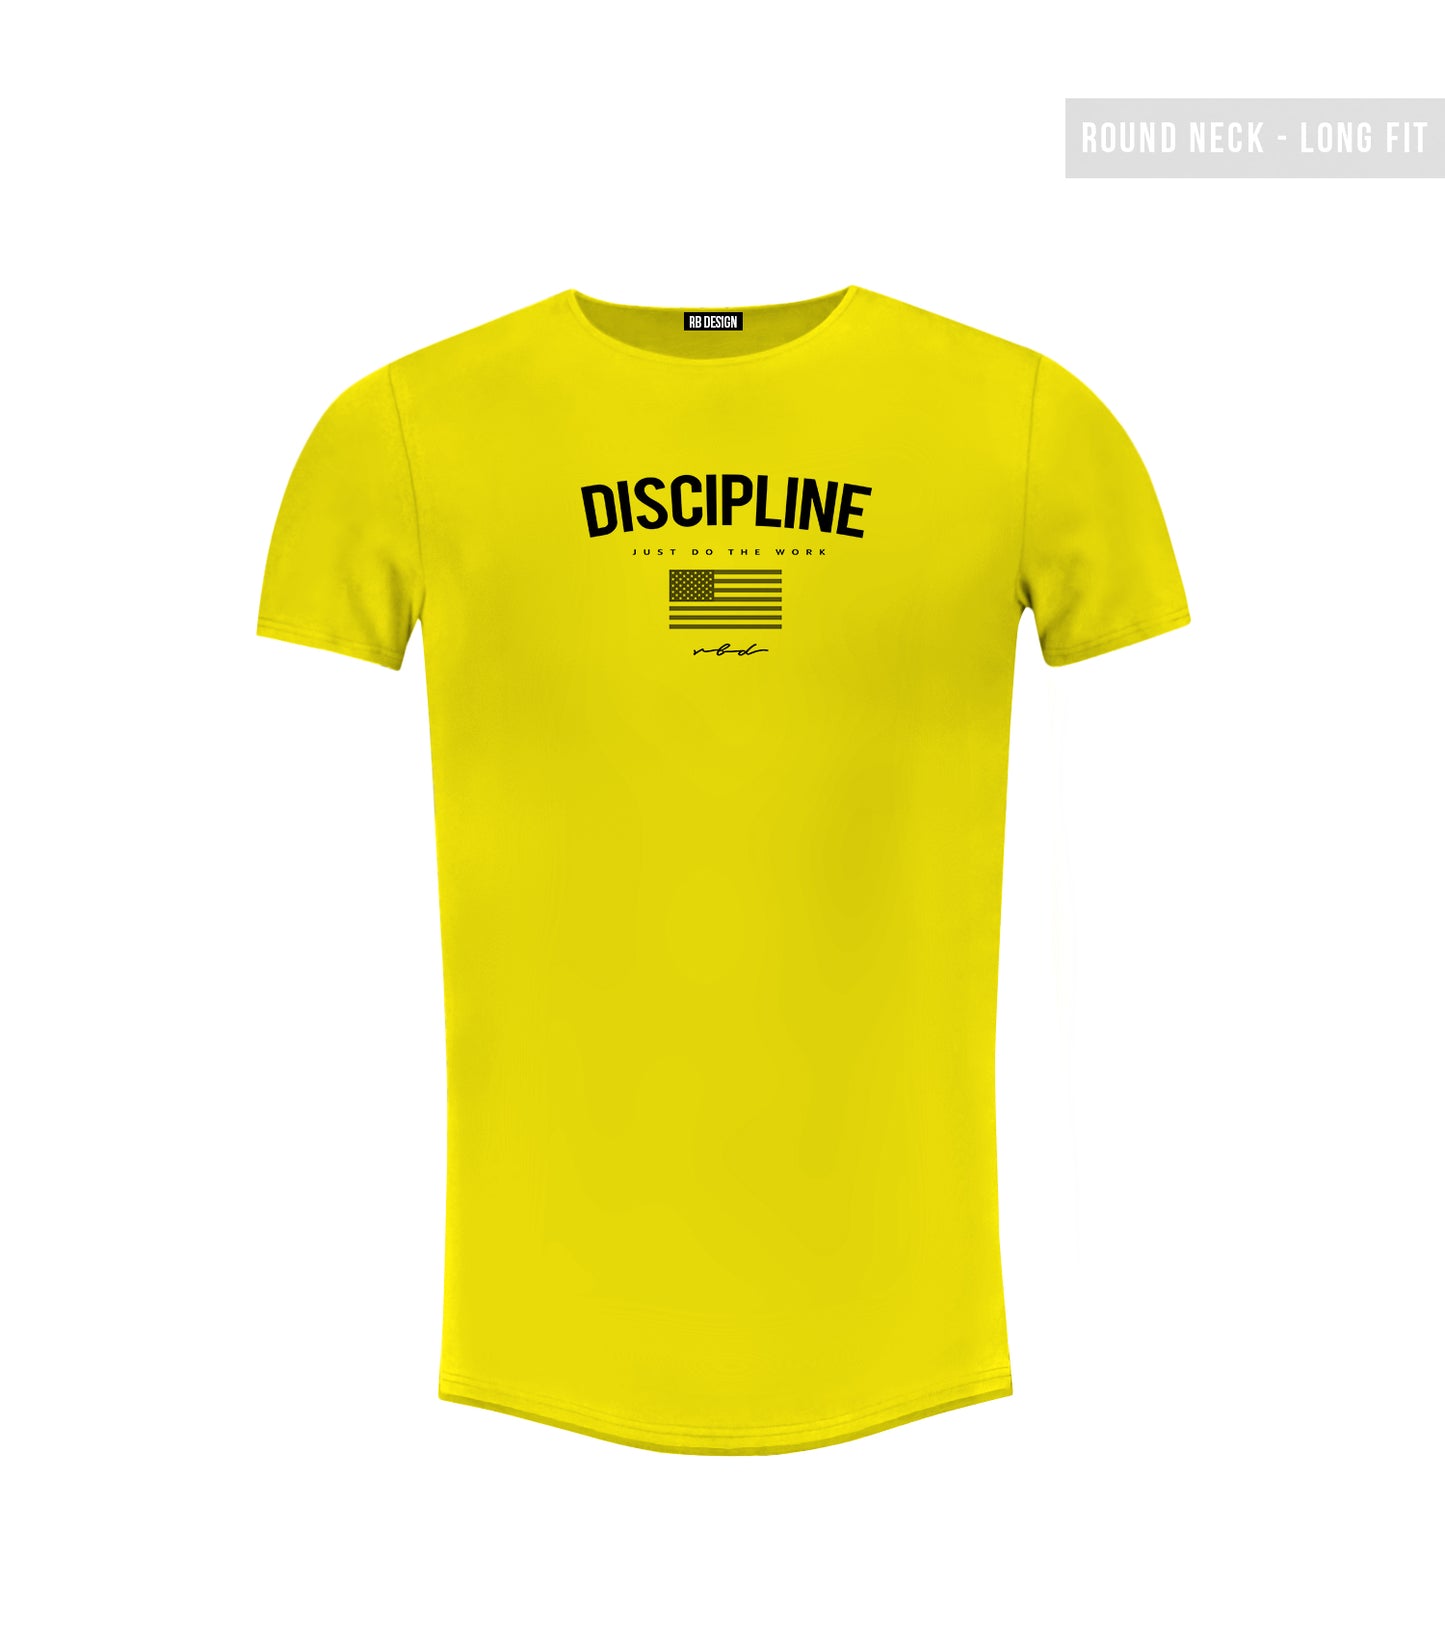 Men's T-shirt "Discipline" Round Neck Long Fit MD933